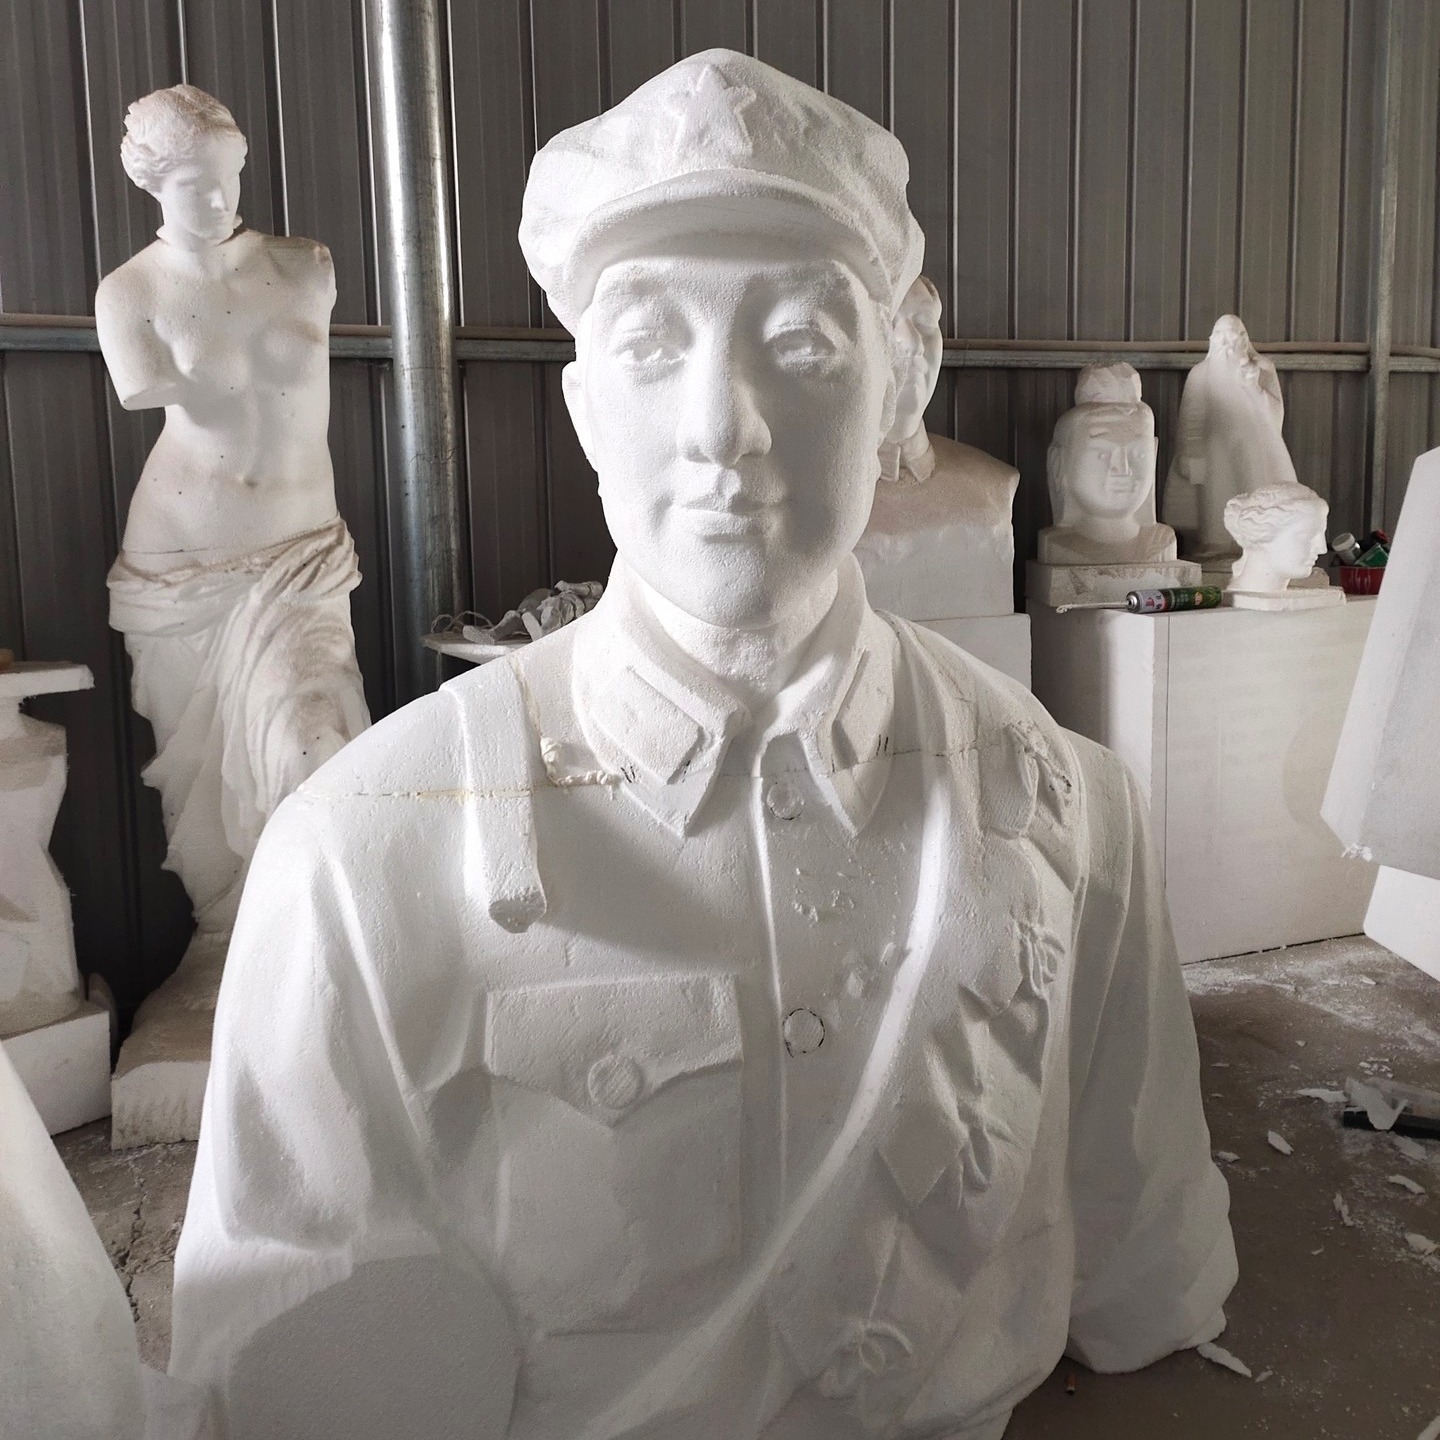 红军泡沫人物雕塑  泡沫人物都是   红军战士主题雕塑   永景园林雕塑